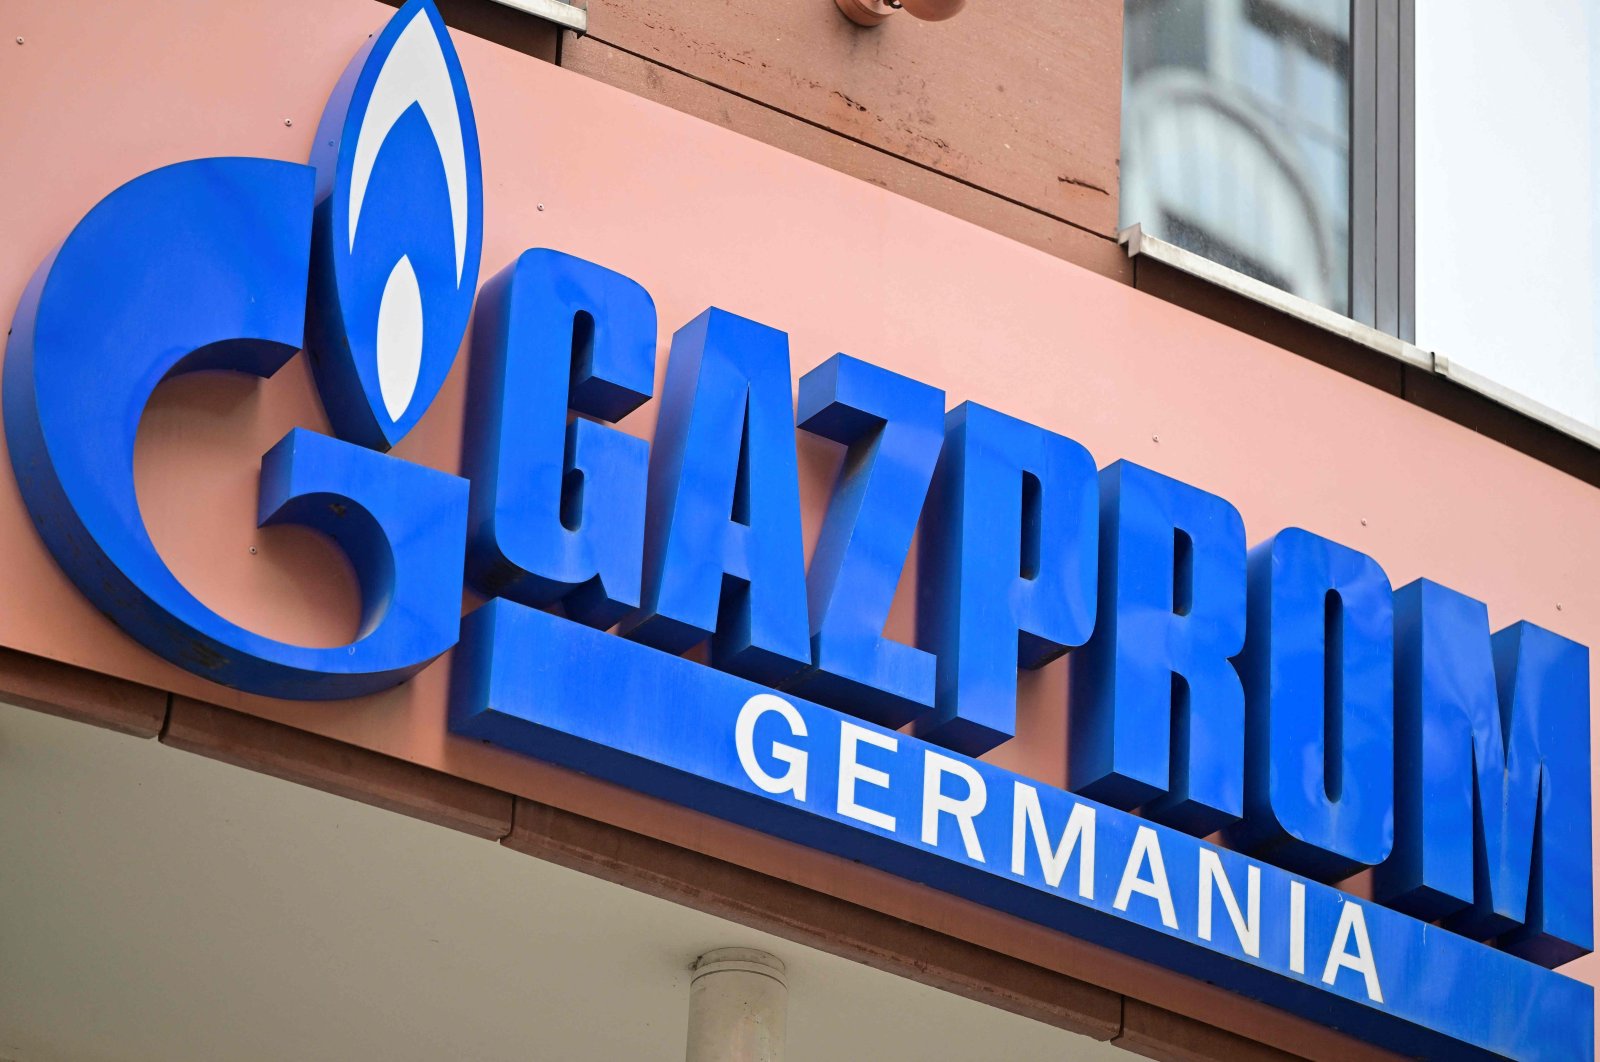 Mantan anak perusahaan Gazprom Jerman diminta untuk melepaskan nama merek